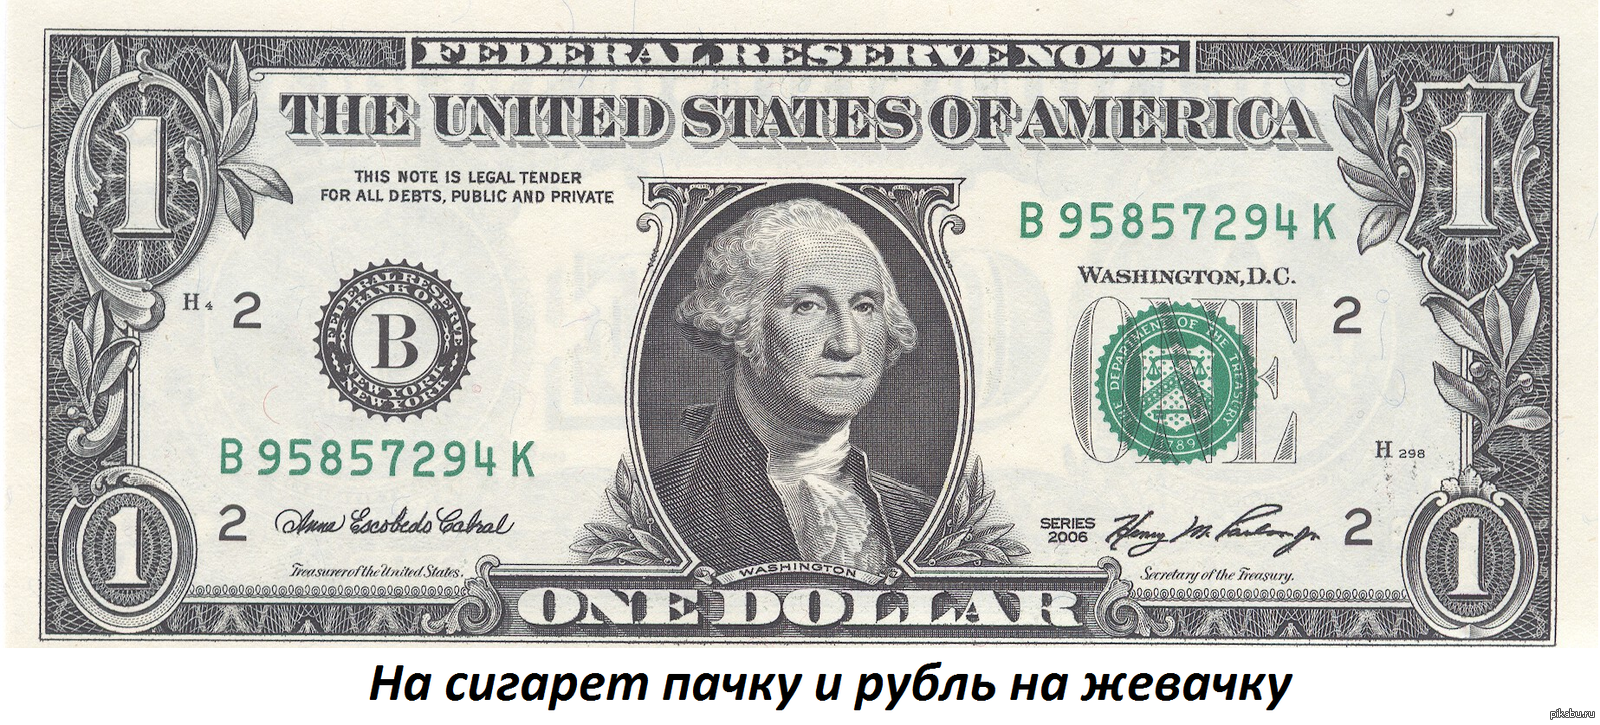 1 доллар 56. Однодолларовая купюра Джордж Вашингтон. Джордж Вашингтон на купюре. 1 Доллар США. Купюра 50 долларов США.